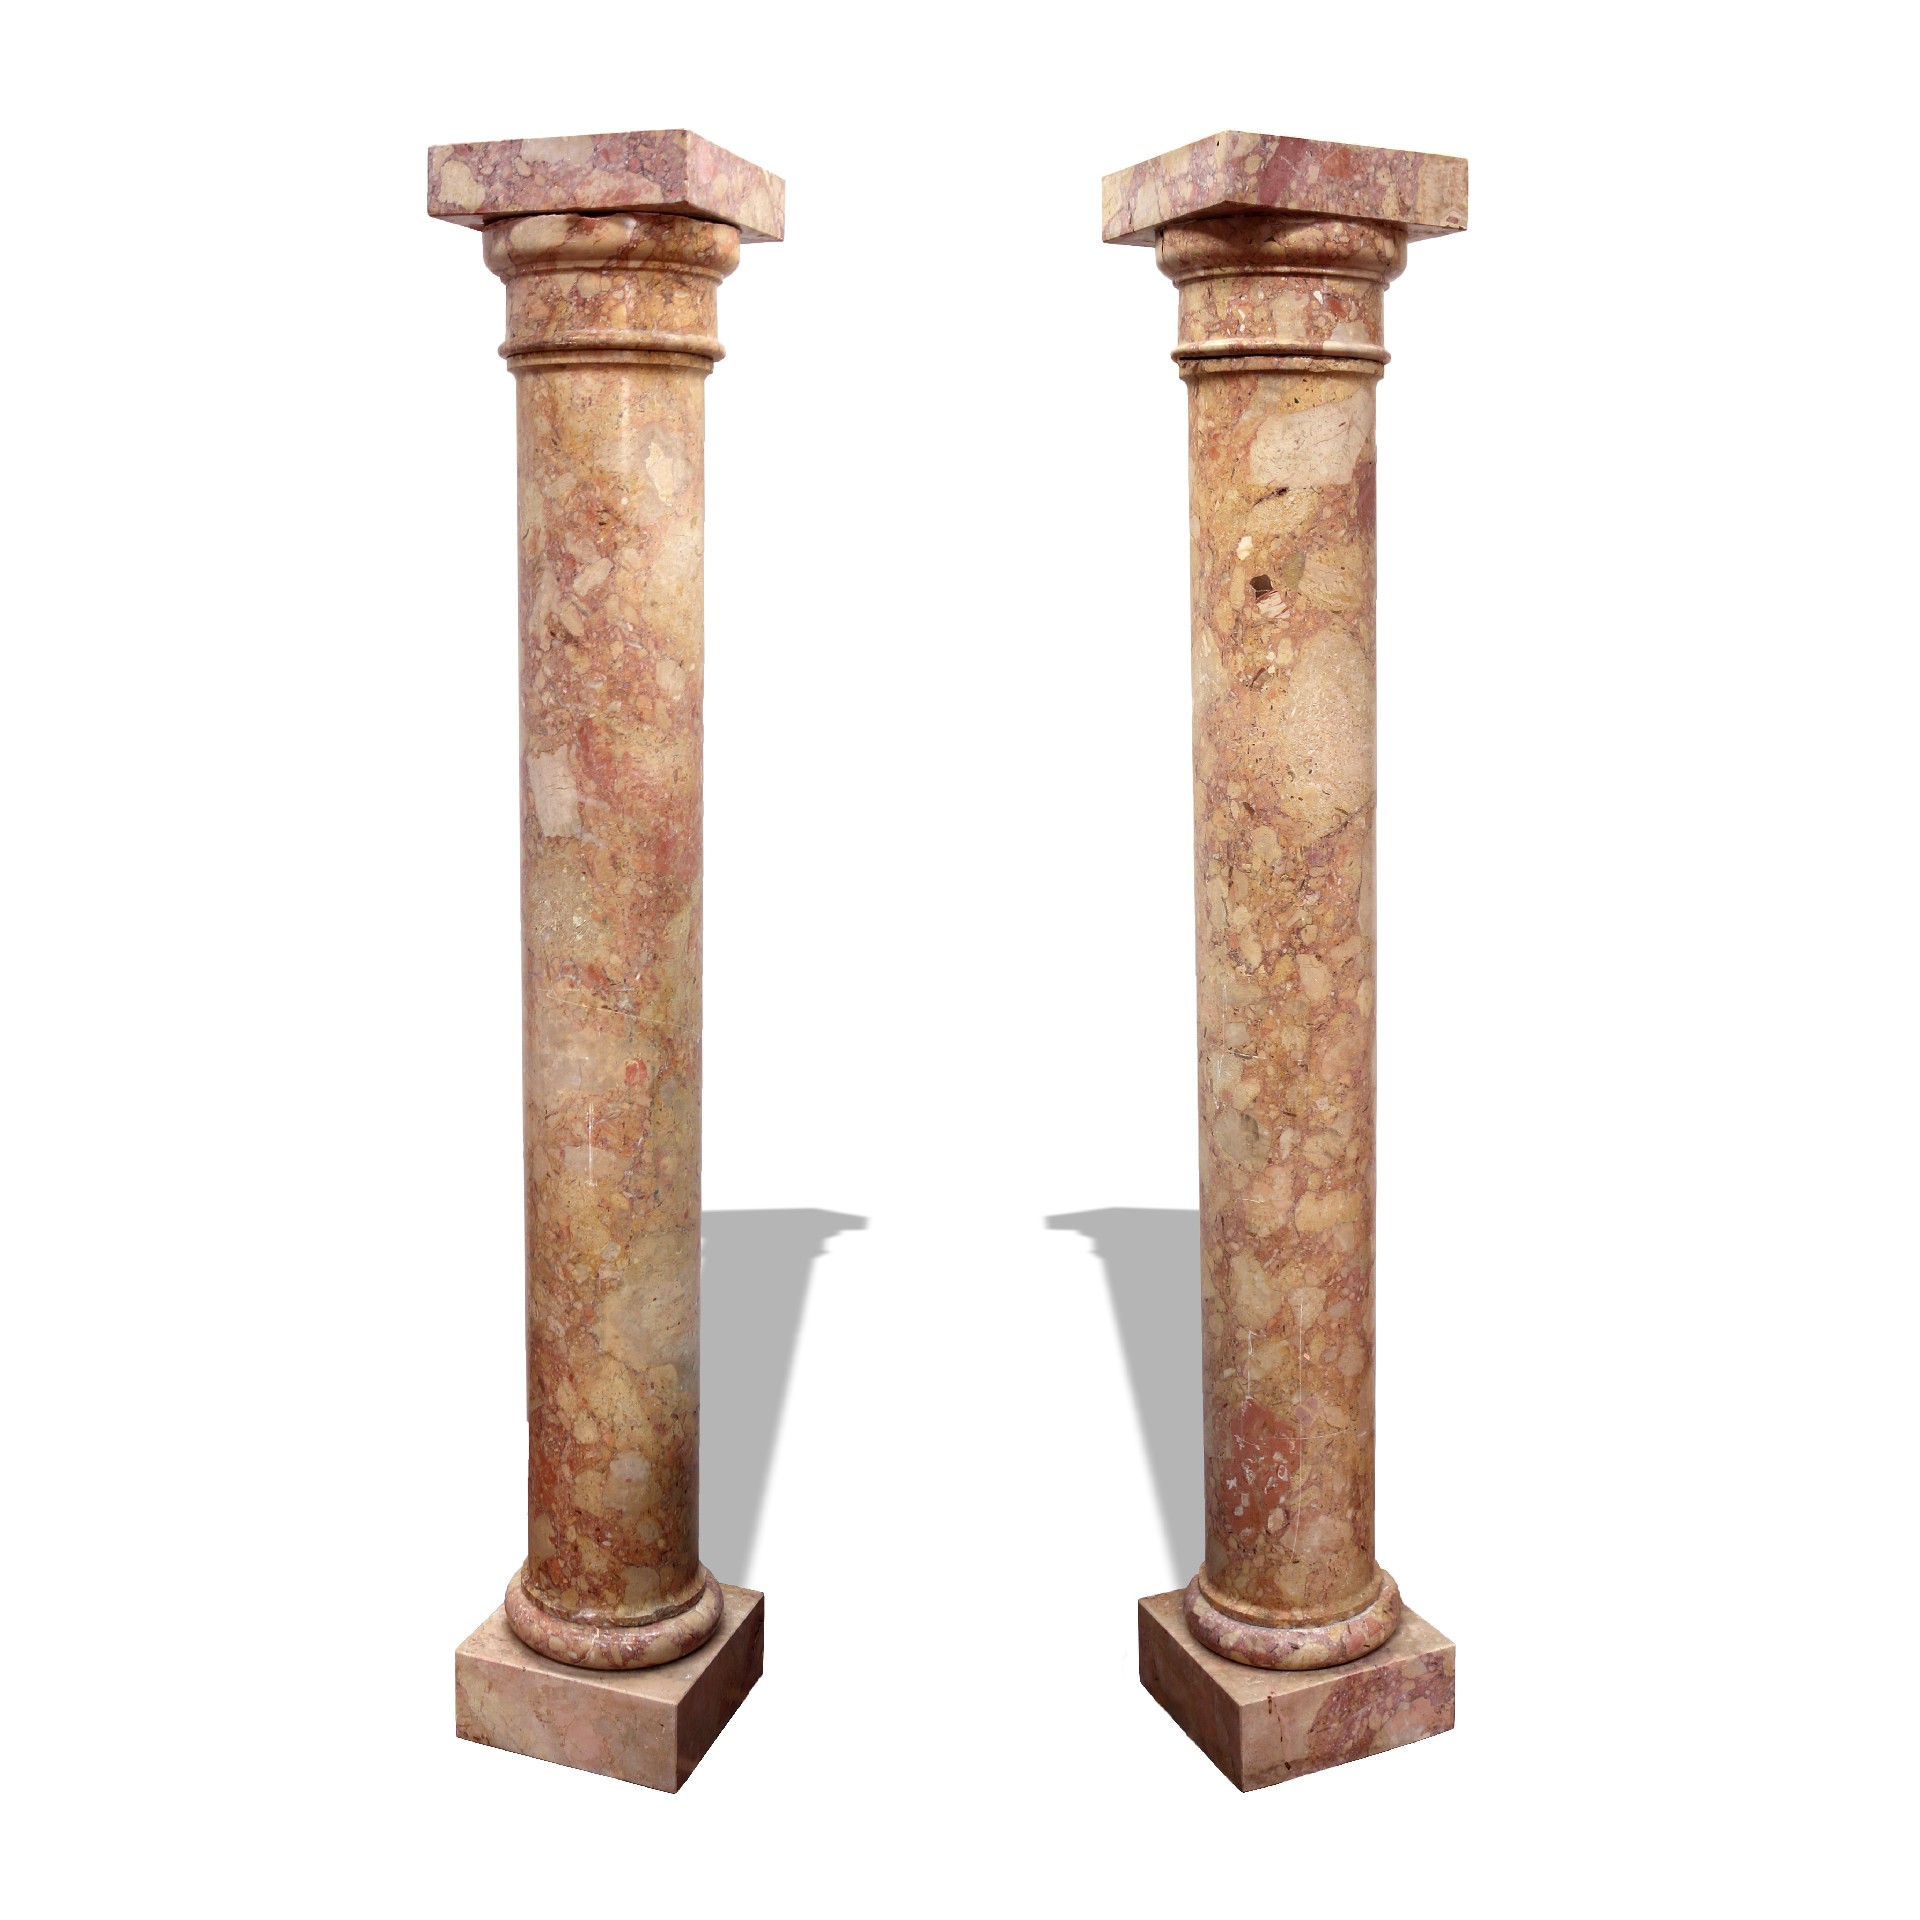 Coppia di antiche colonne in marmo. Epoca 1800. - Colonne antiche - Architettura - Prodotti - Antichità Fiorillo